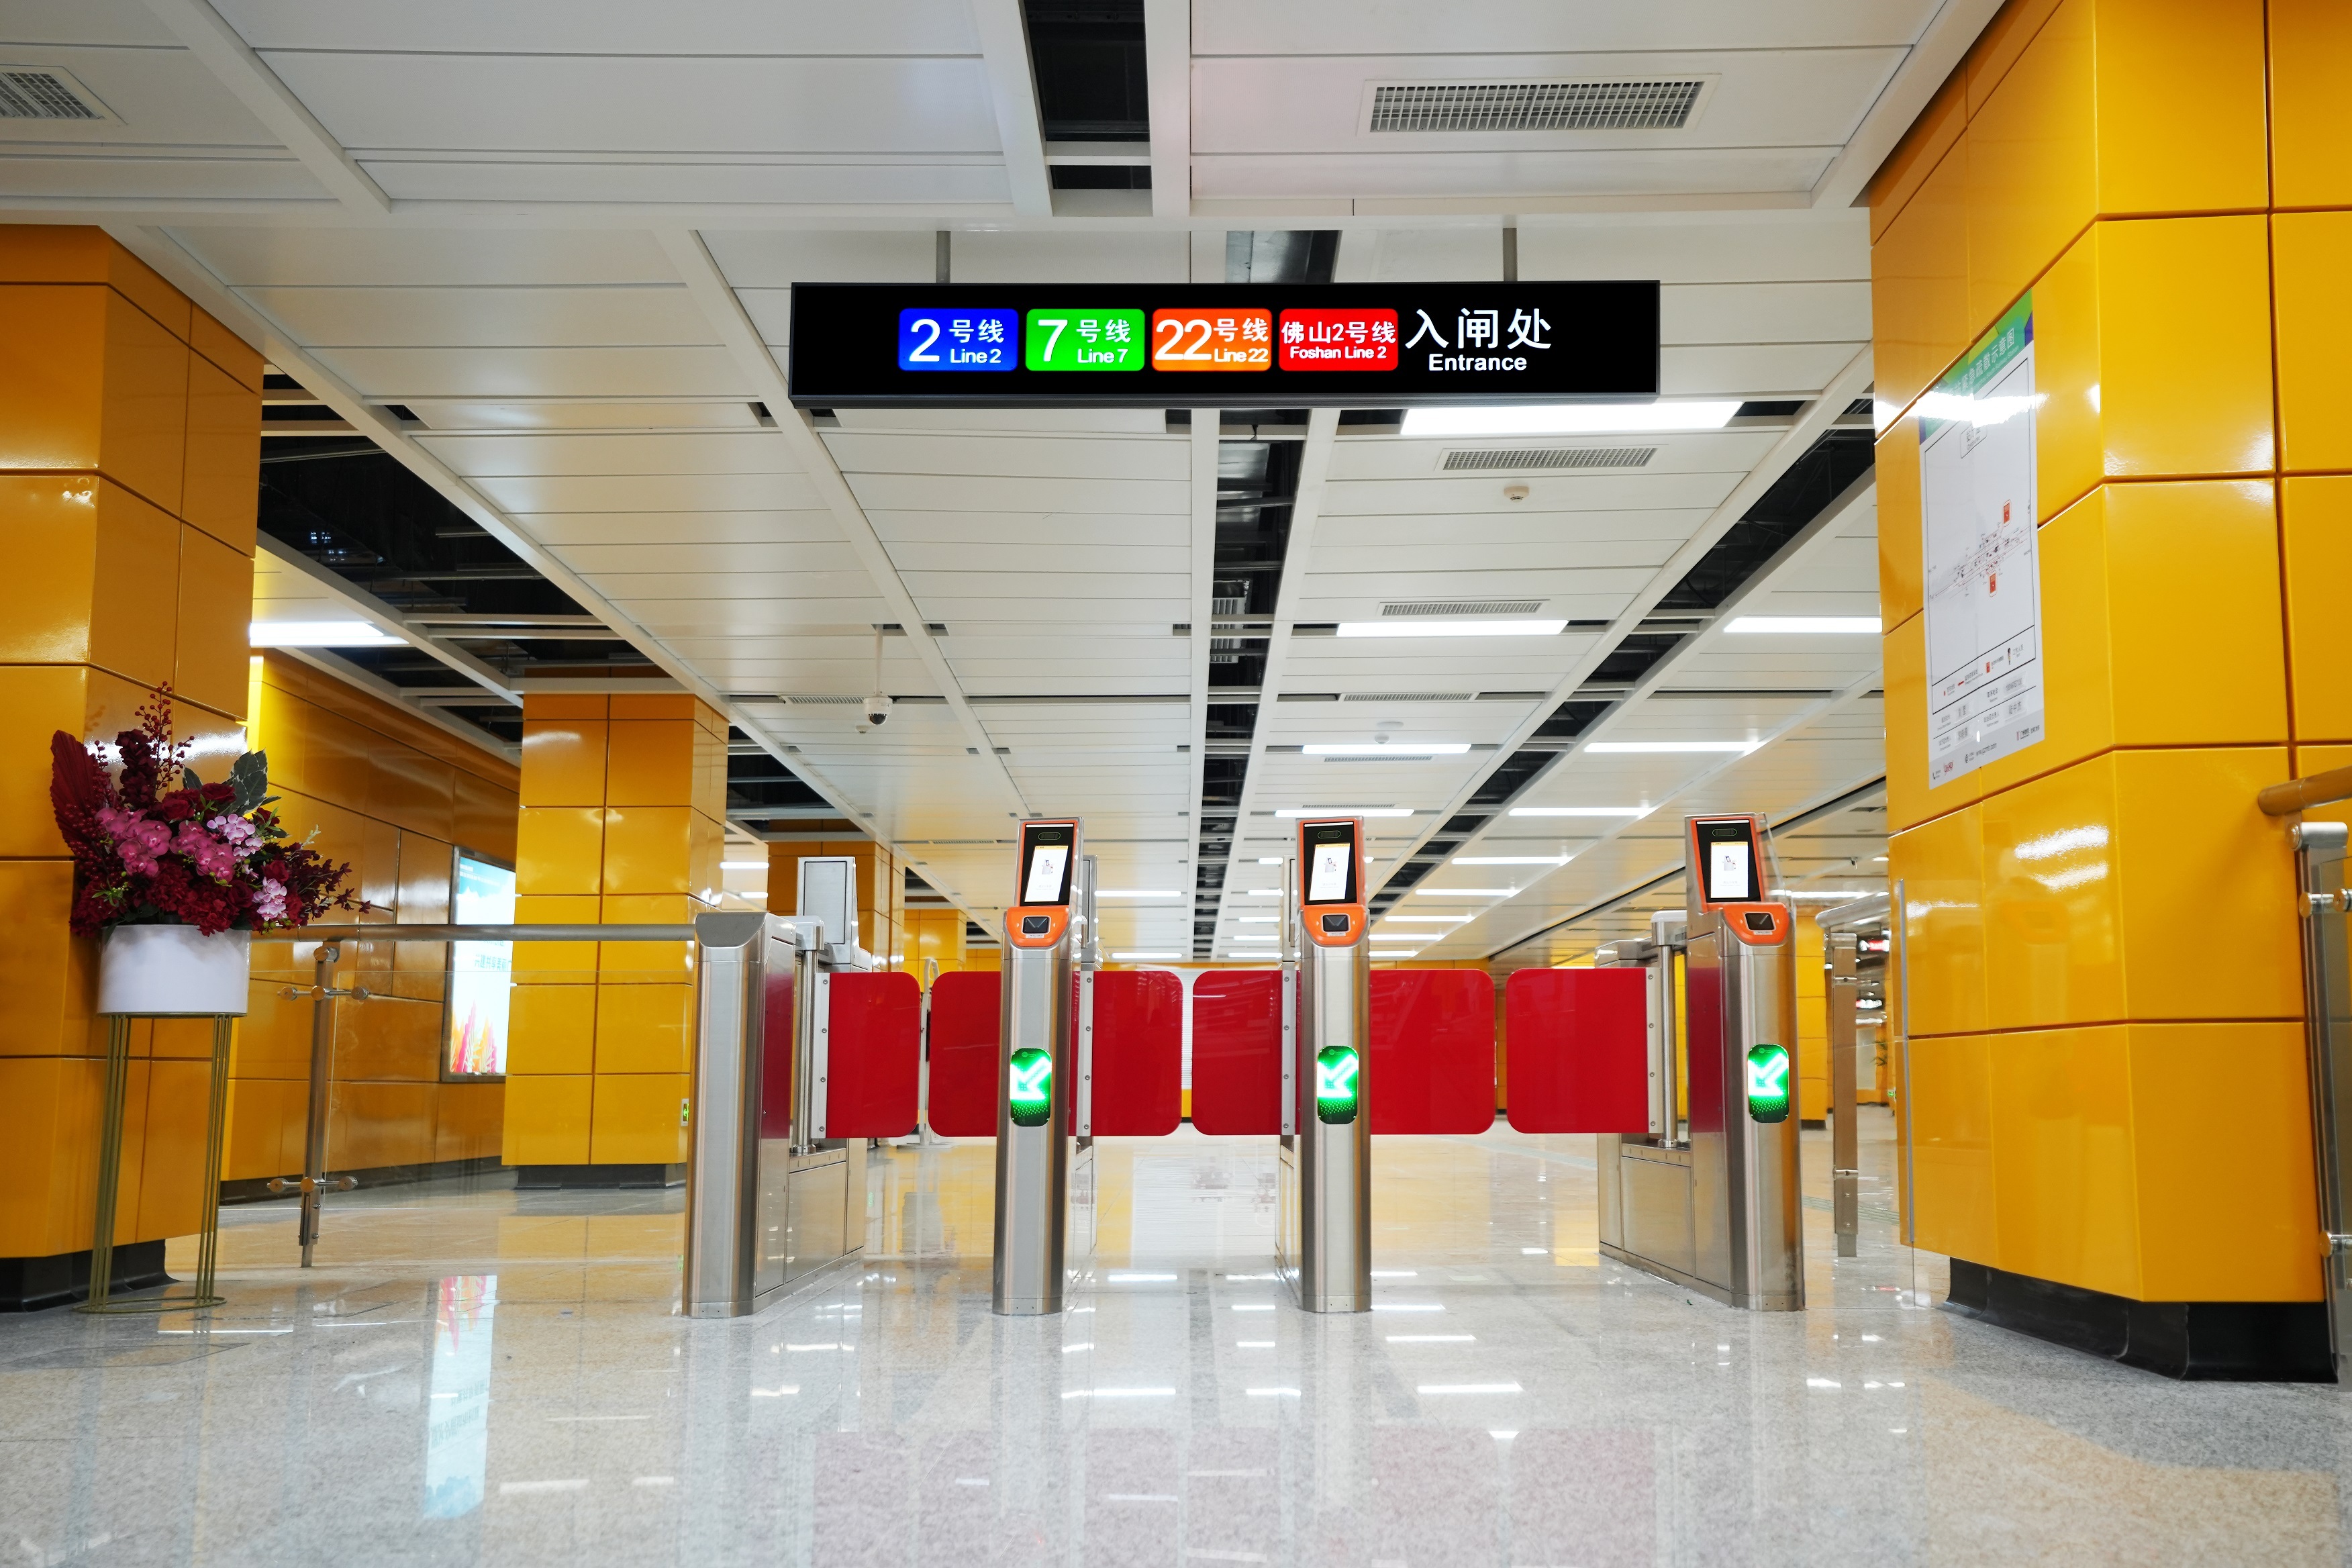 地铁广州南站新增并改造进出闸机共86台，每组闸机至少设置1个宽通道双向闸机。